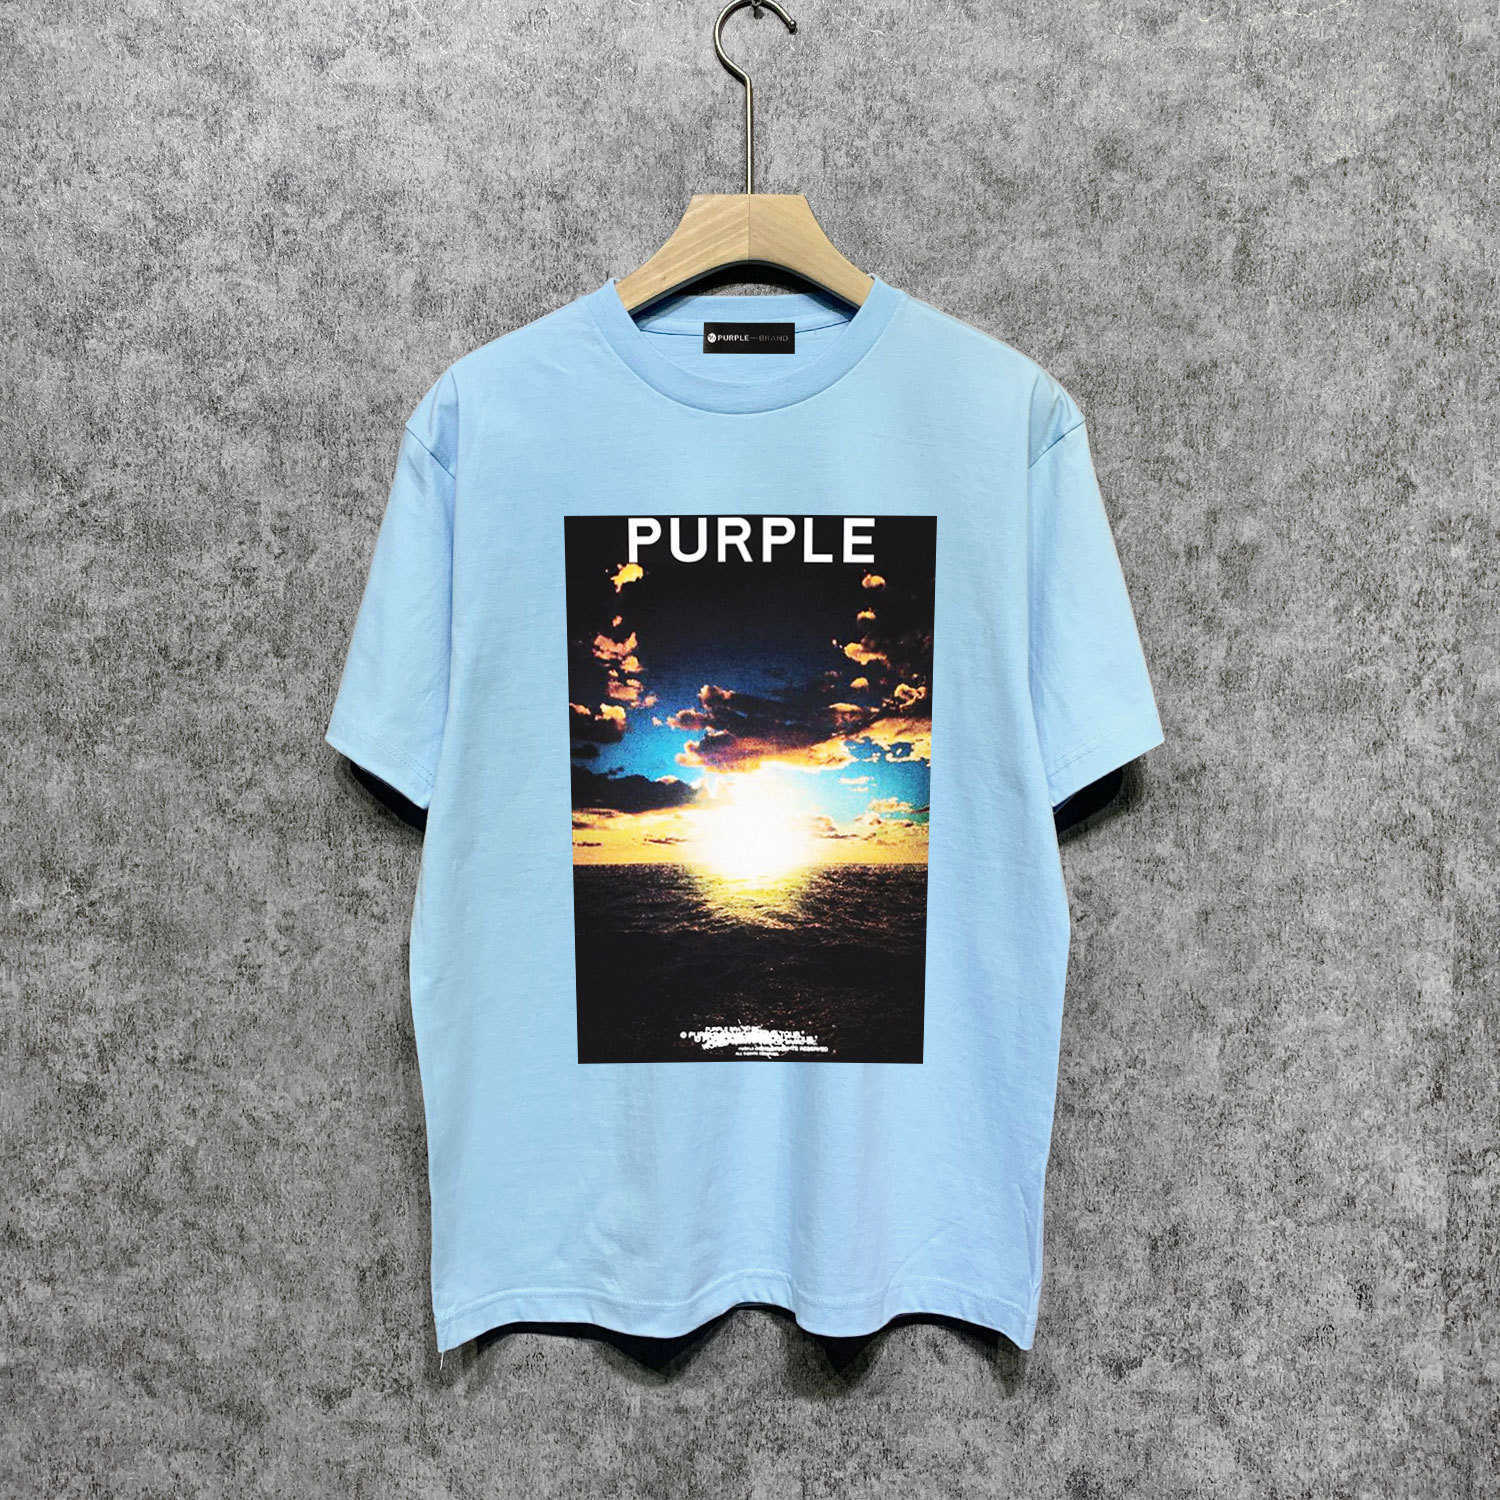 Long term trendy brand PURPLE BRAND T SHIRT short sleeved T-shirt shirtX0NB